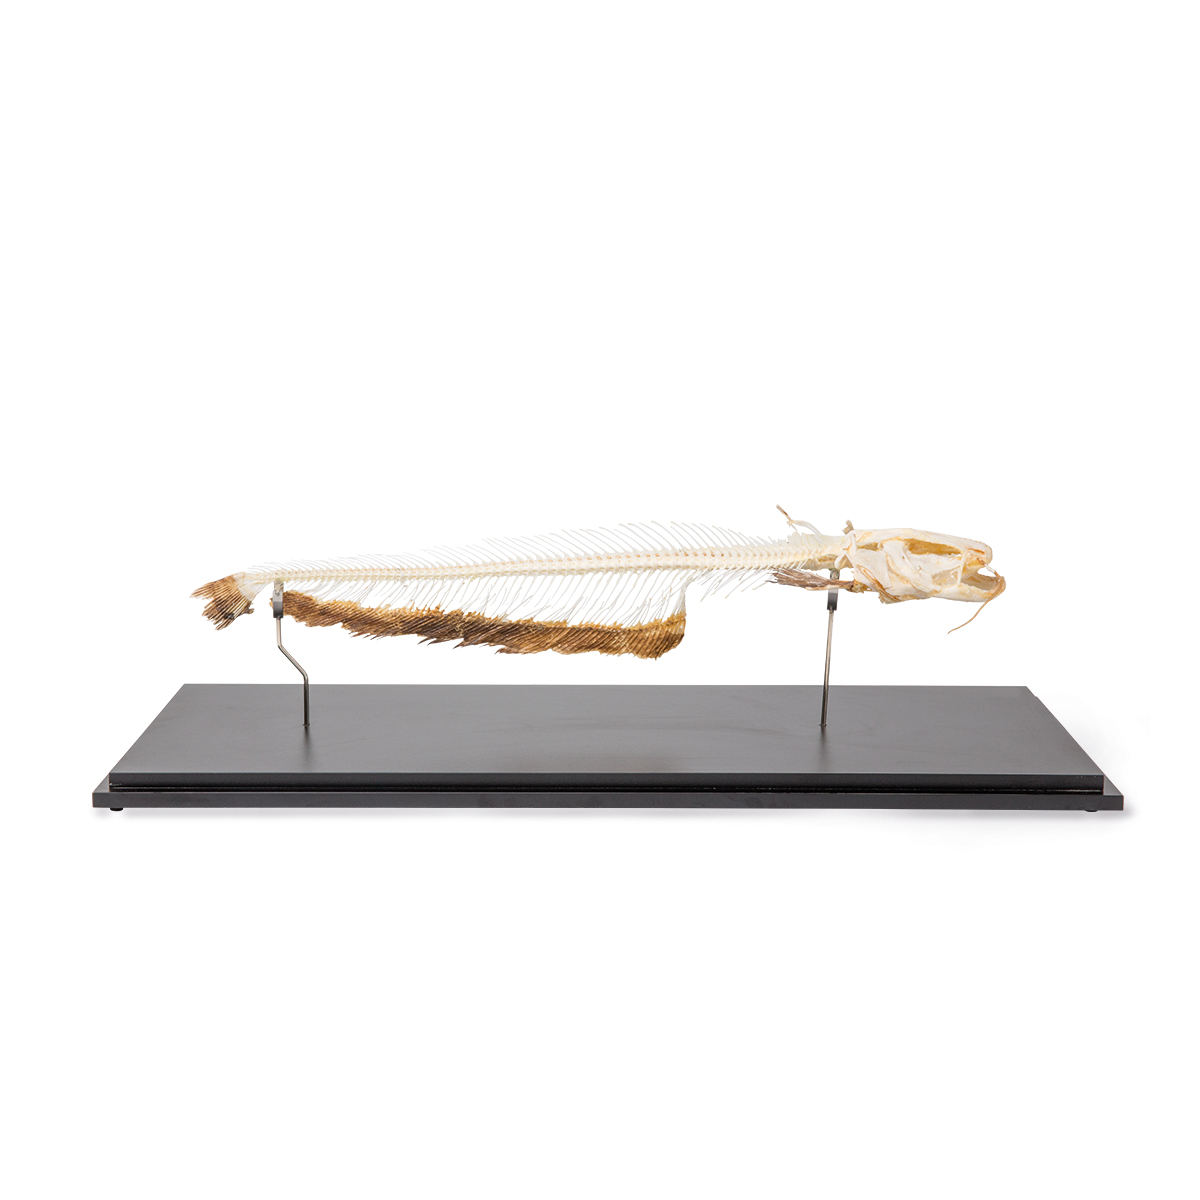 Skelett Europäischer Wels (Silurus glanis), Präparat, Bestellnummer 1020964, T300461, 3B Scientific